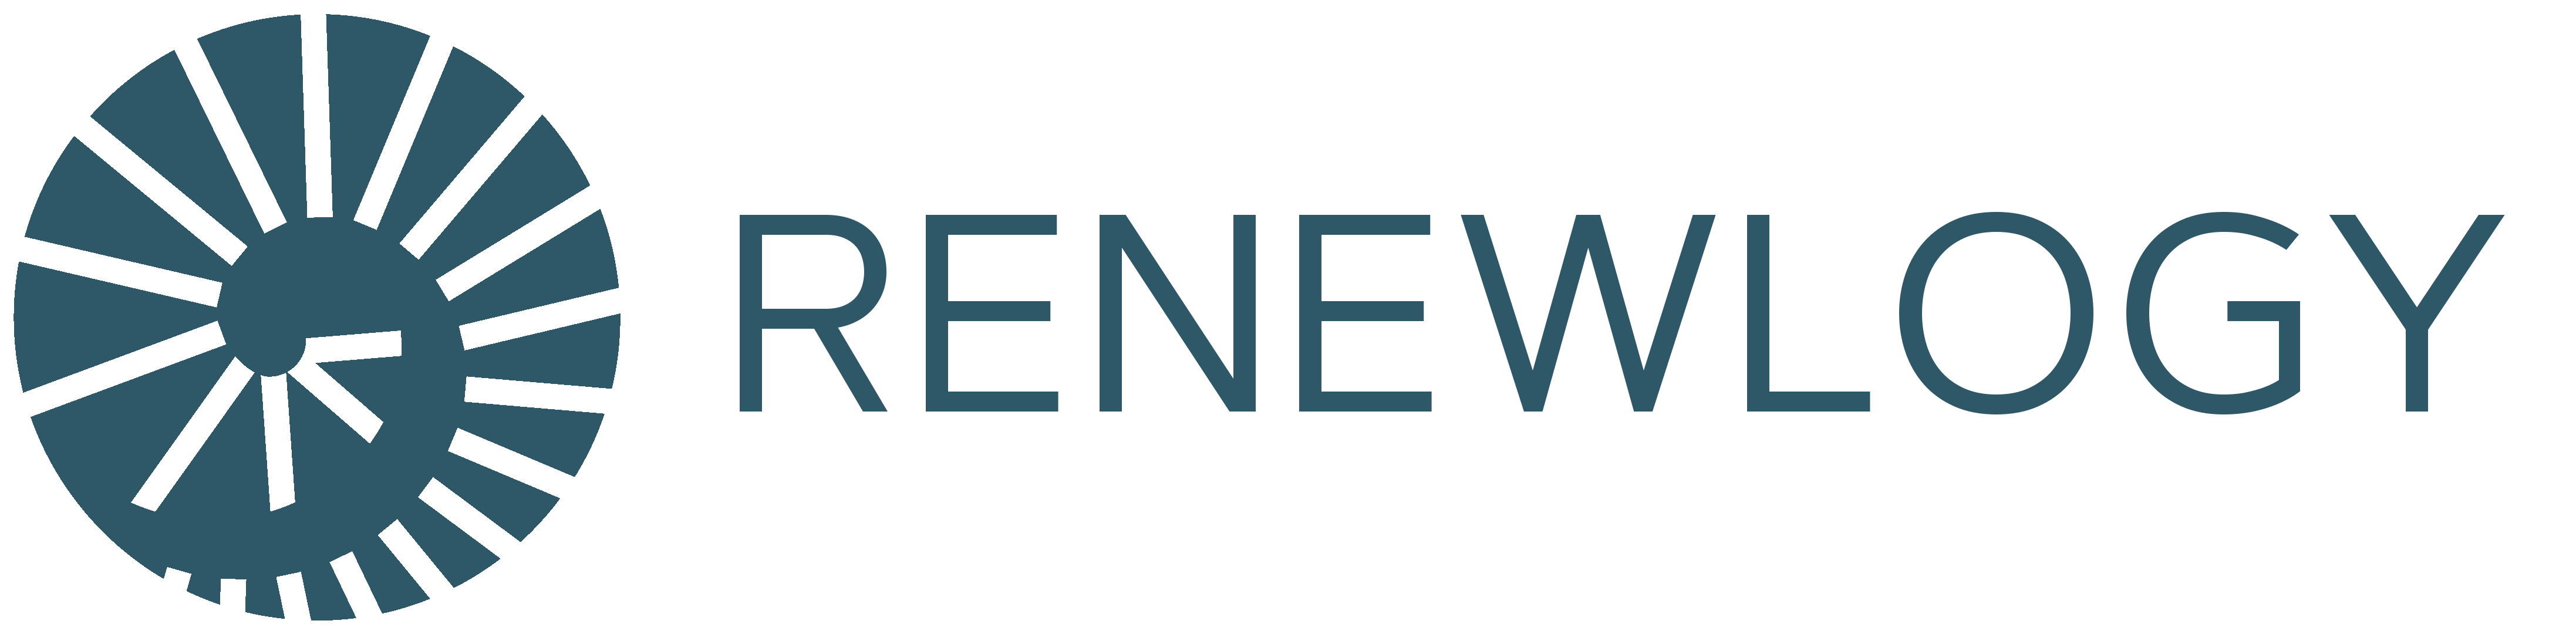 Renewology logo